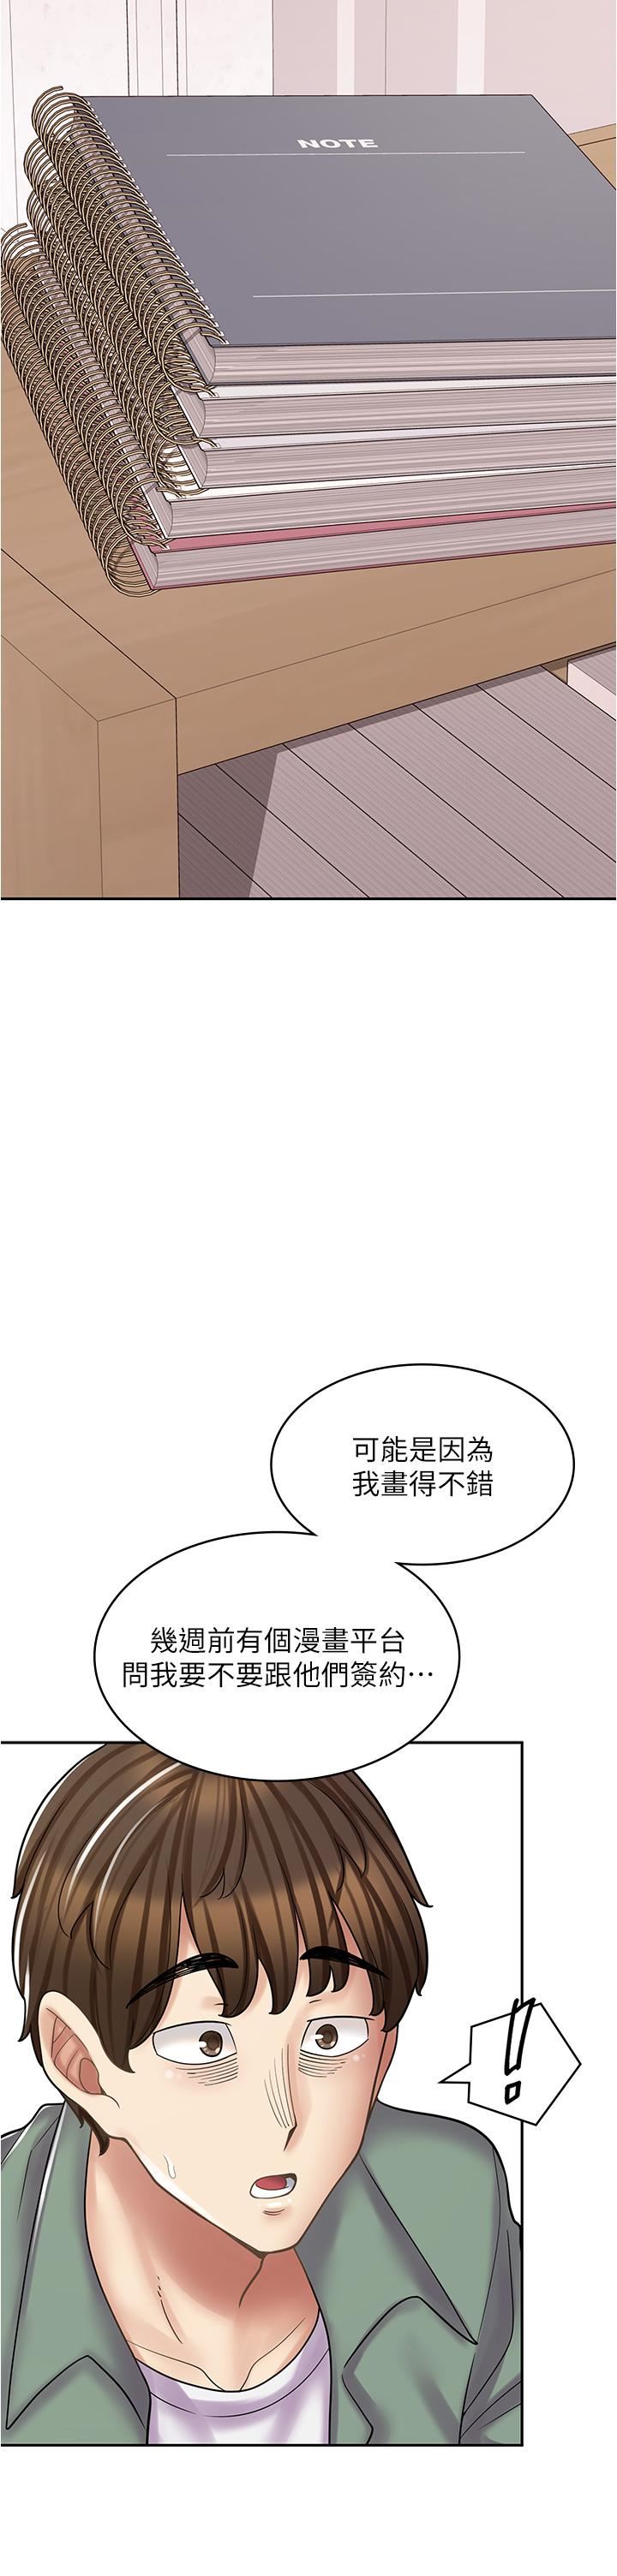 漫畫店工讀生-第29章-图片12